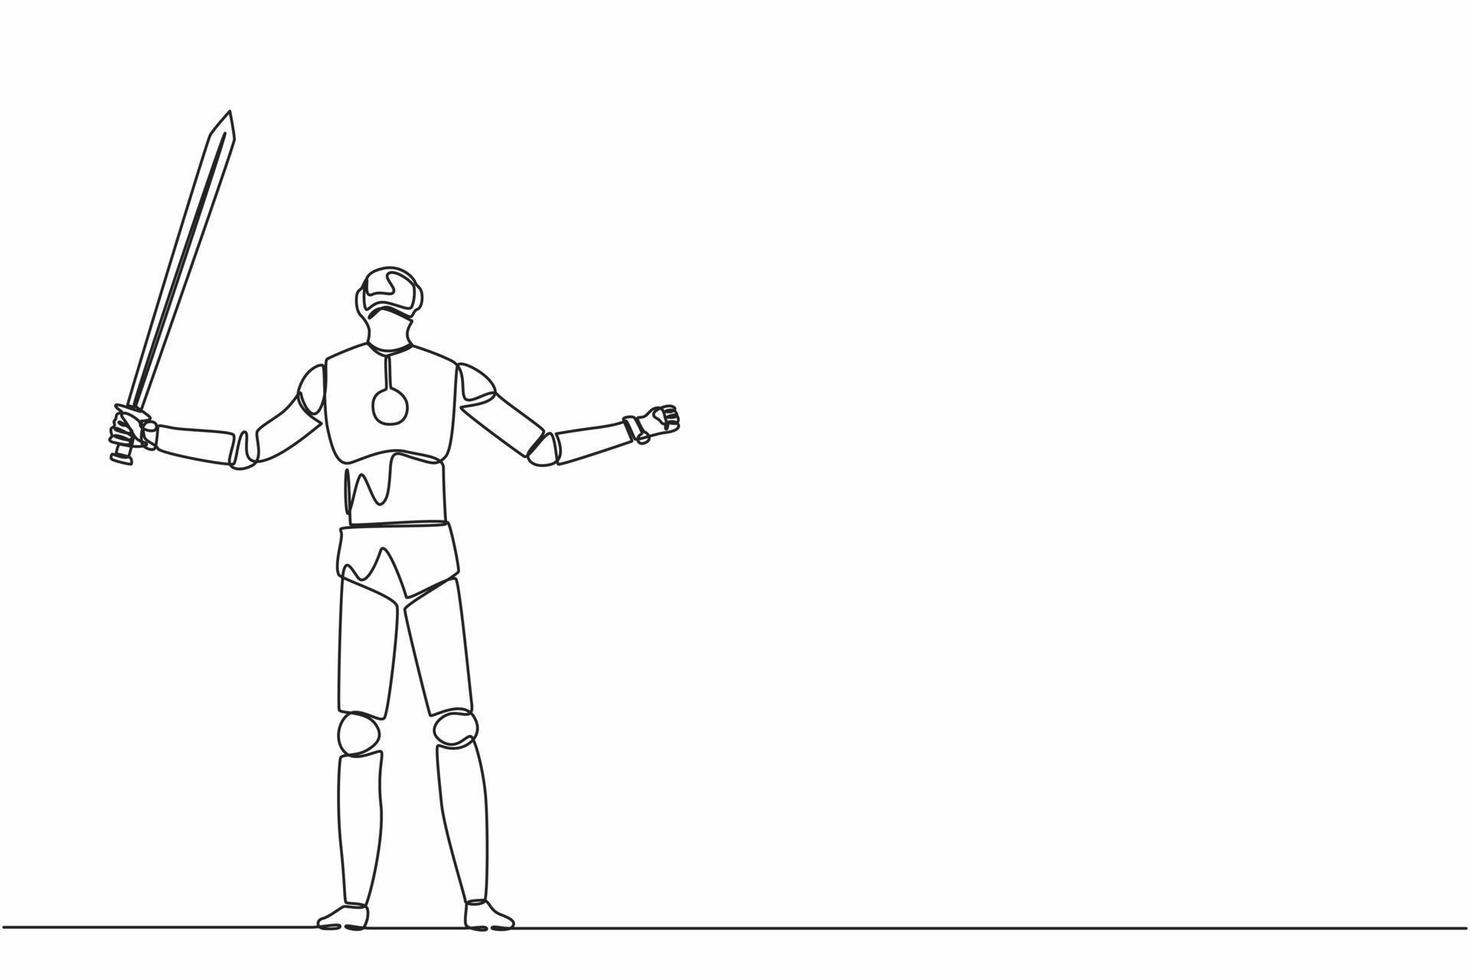 kontinuierlich eine Linie zeichnende Roboter, die stehen und ein großes Schwert heben. humanoider Roboter kybernetischer Organismus. zukünftiges robotikentwicklungskonzept. einzeiliges zeichnen design vektorgrafik illustration vektor